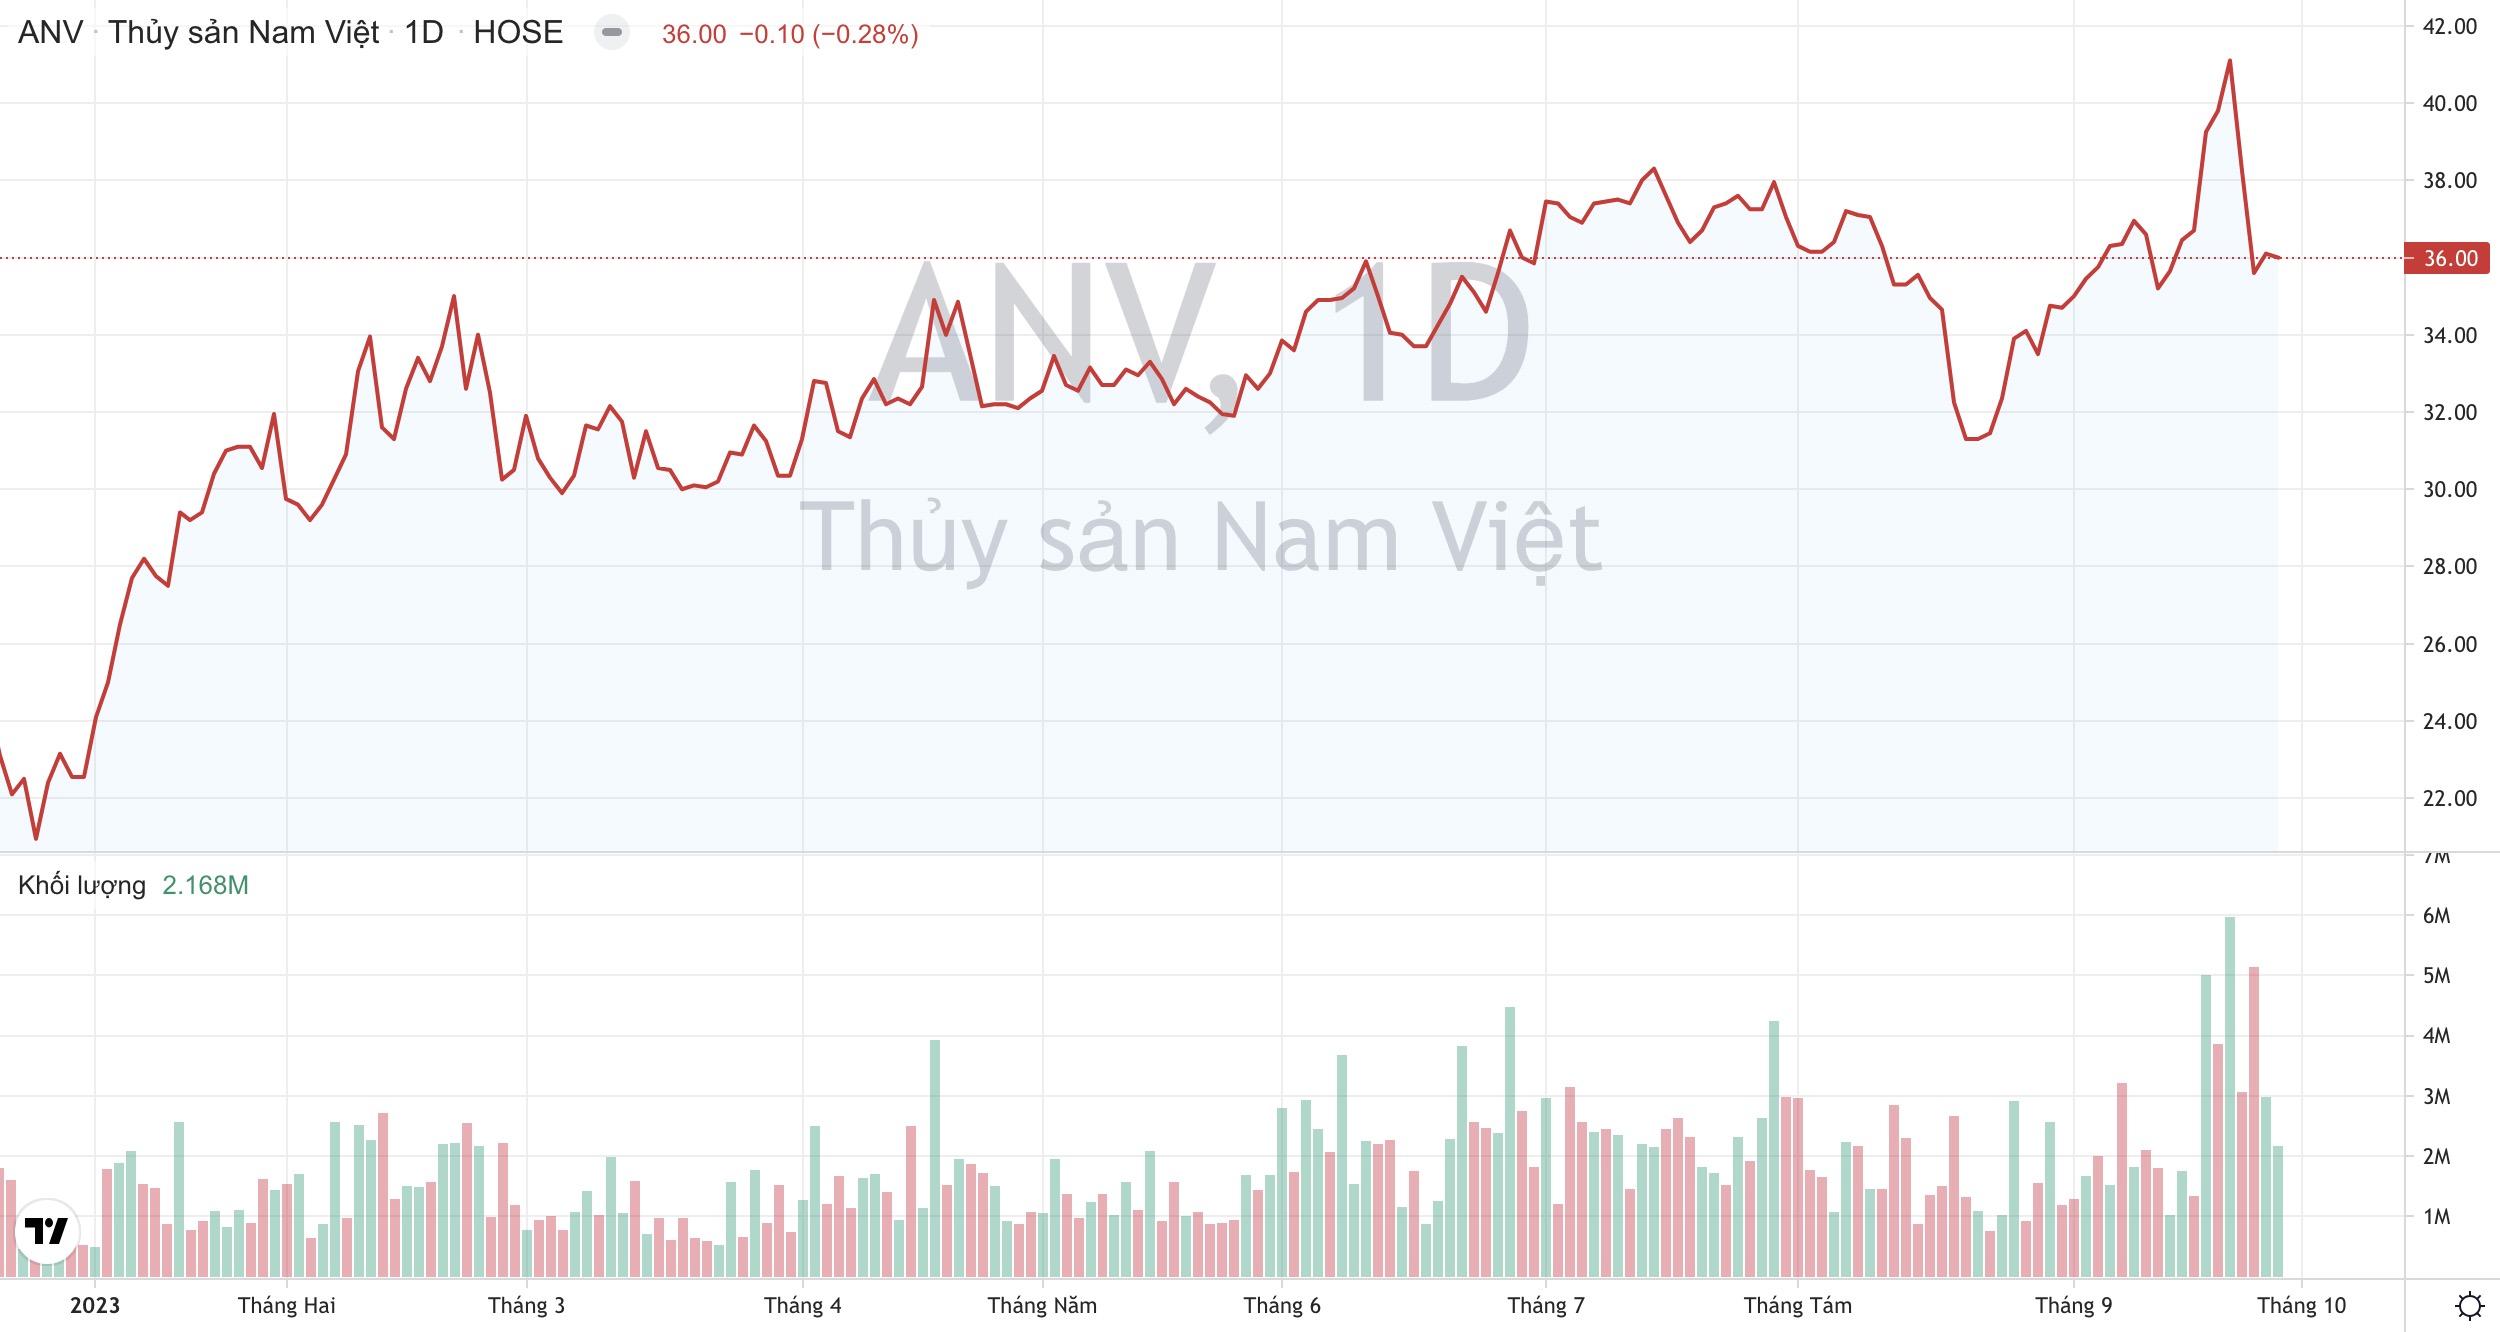 Giá cổ phiếu ANV Thuỷ sản Nam Việt